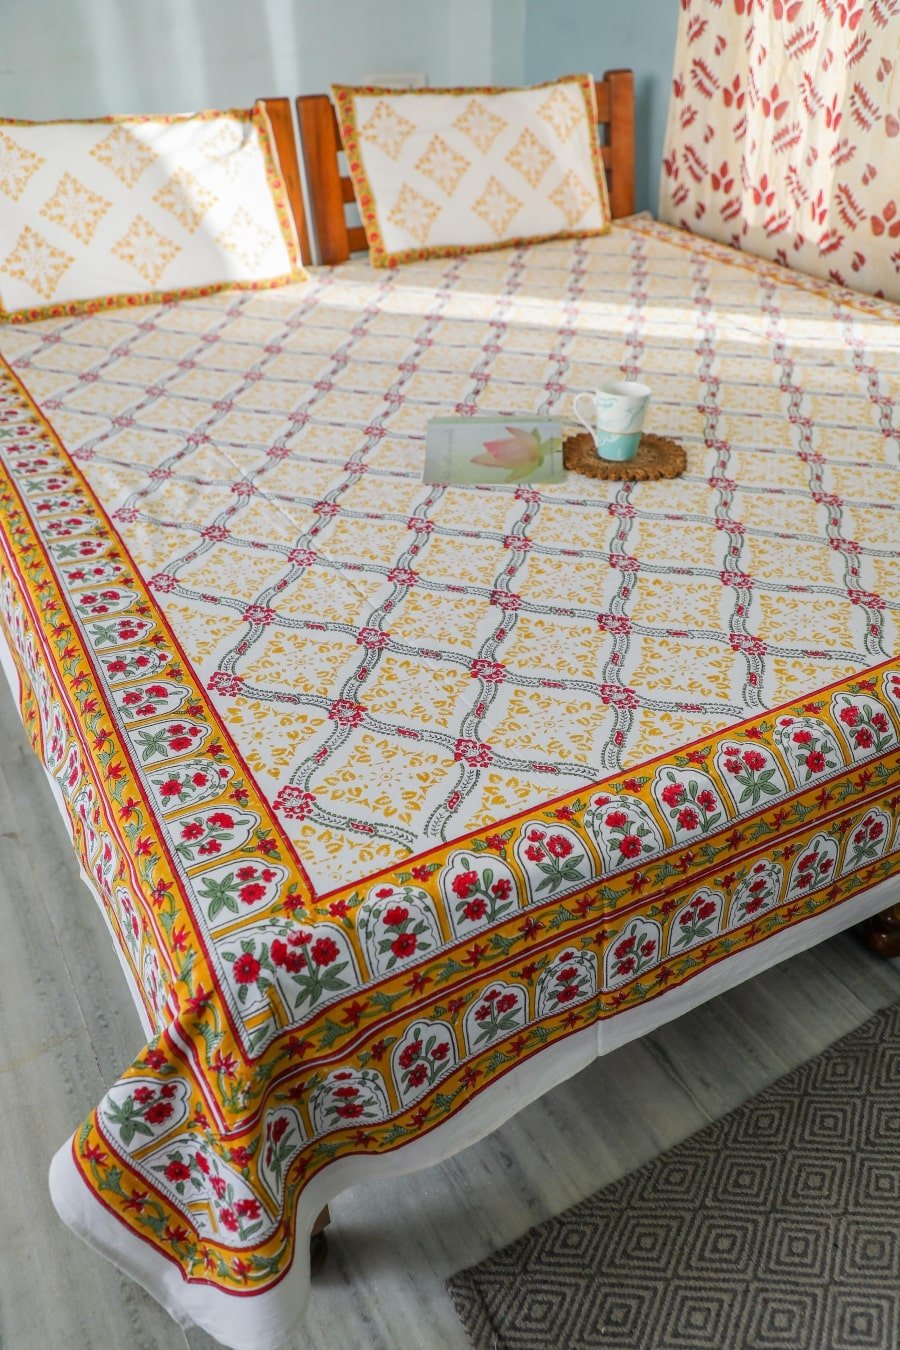 SootiSyahi 'Floral Culture' Handblock Printed Cotton Bedsheet - SootiSyahi